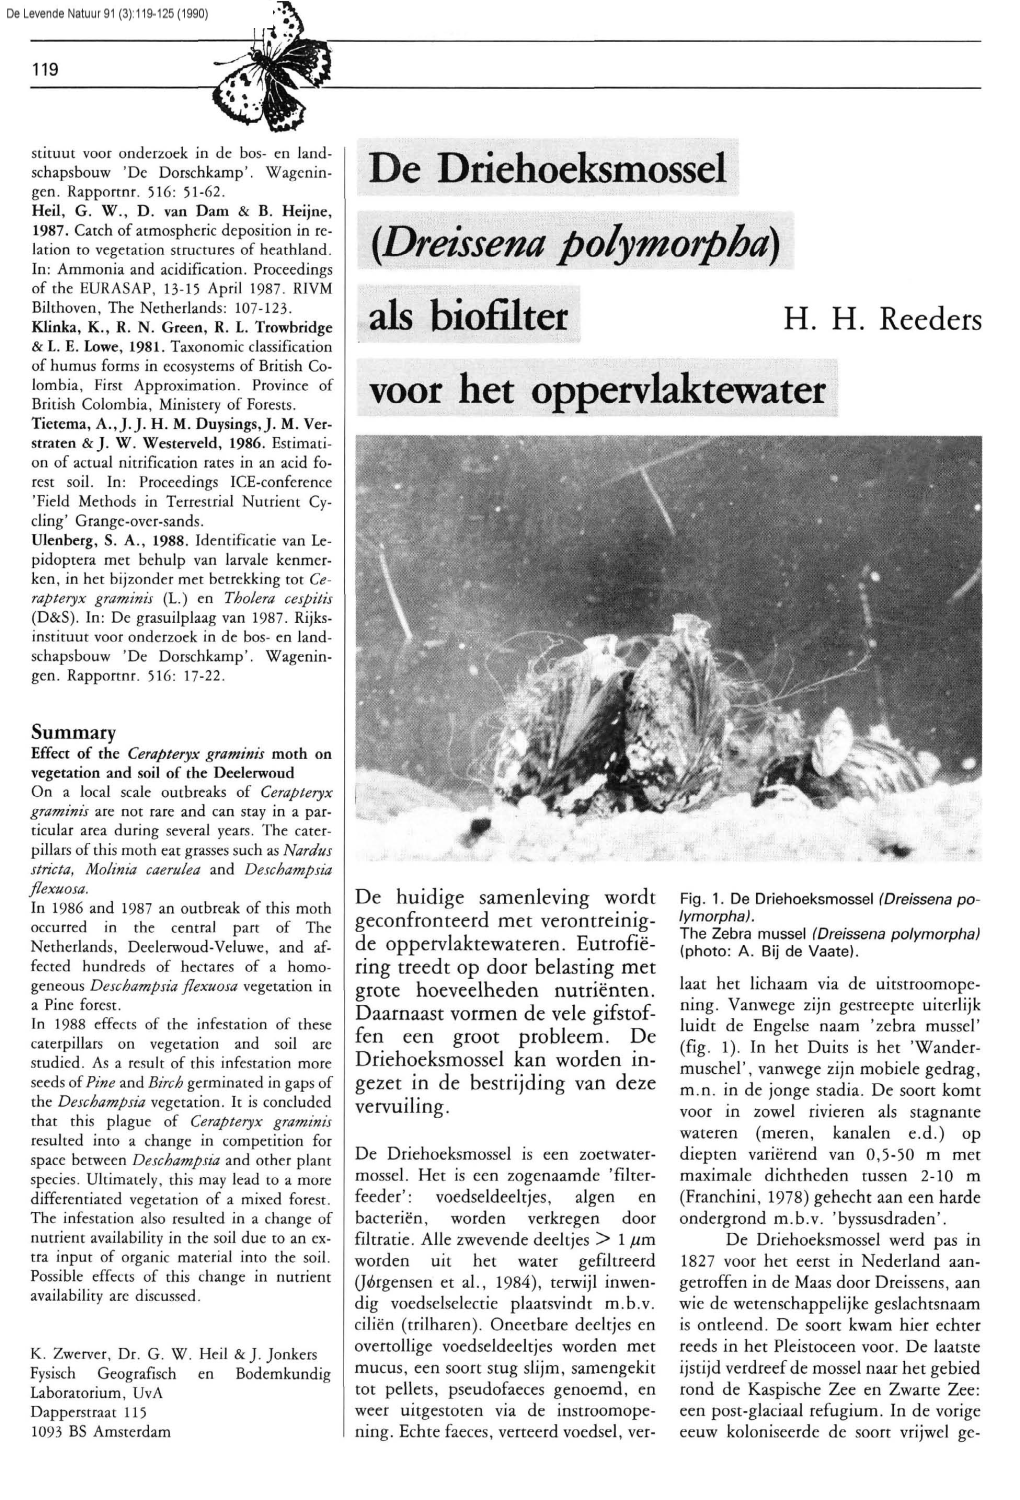 Reeders, H.H. (1990) De Driehoeksmossel (Dreissena Polymorpha) Als Biofilter Voor Het Oppervlaktewater. DLN 91: 119-125